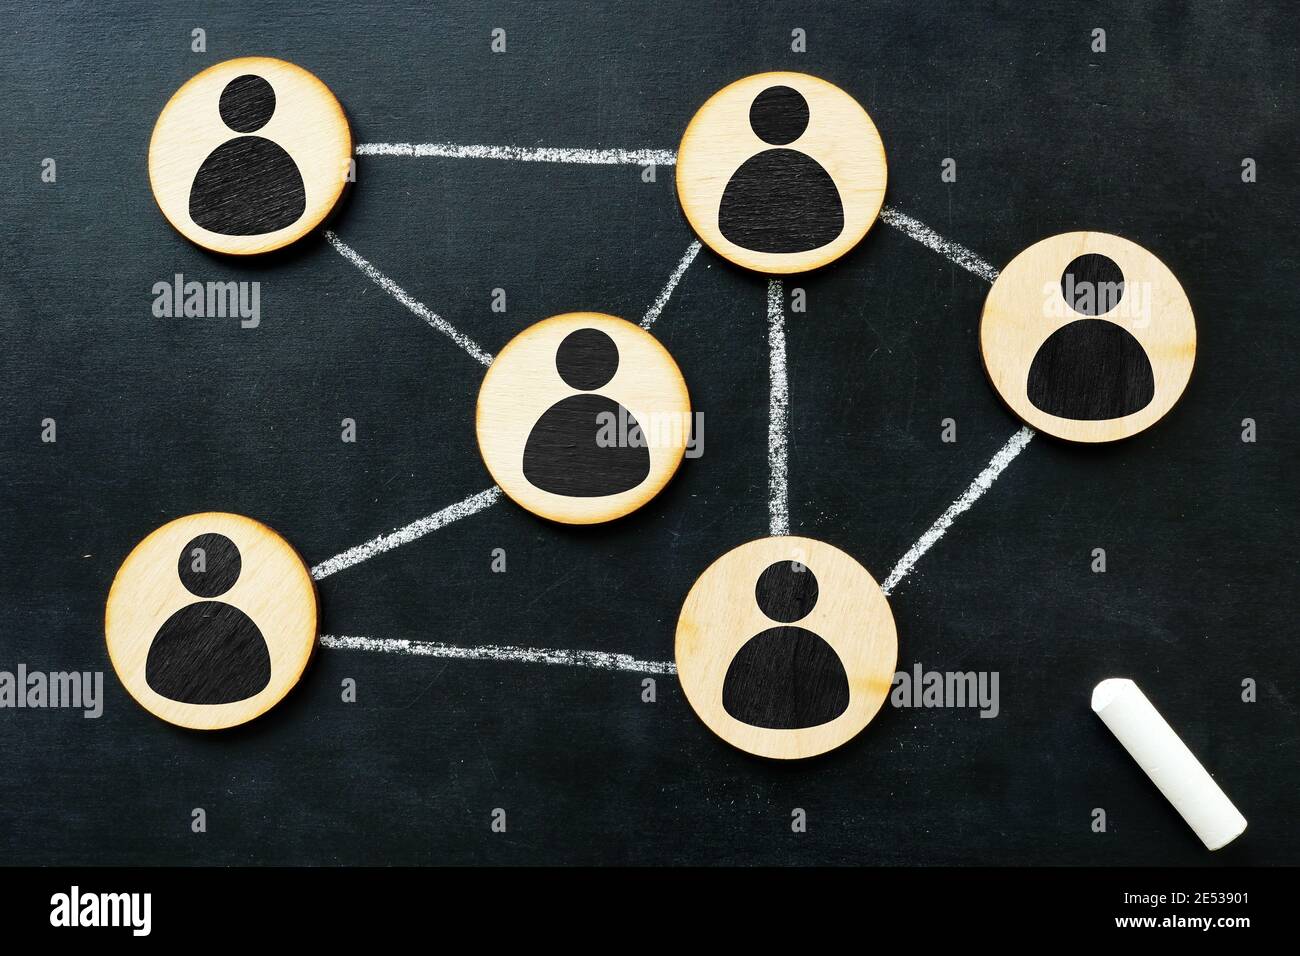 Structure de l'organisation et concept de réseau social. Connecté par des lignes figurines. Banque D'Images